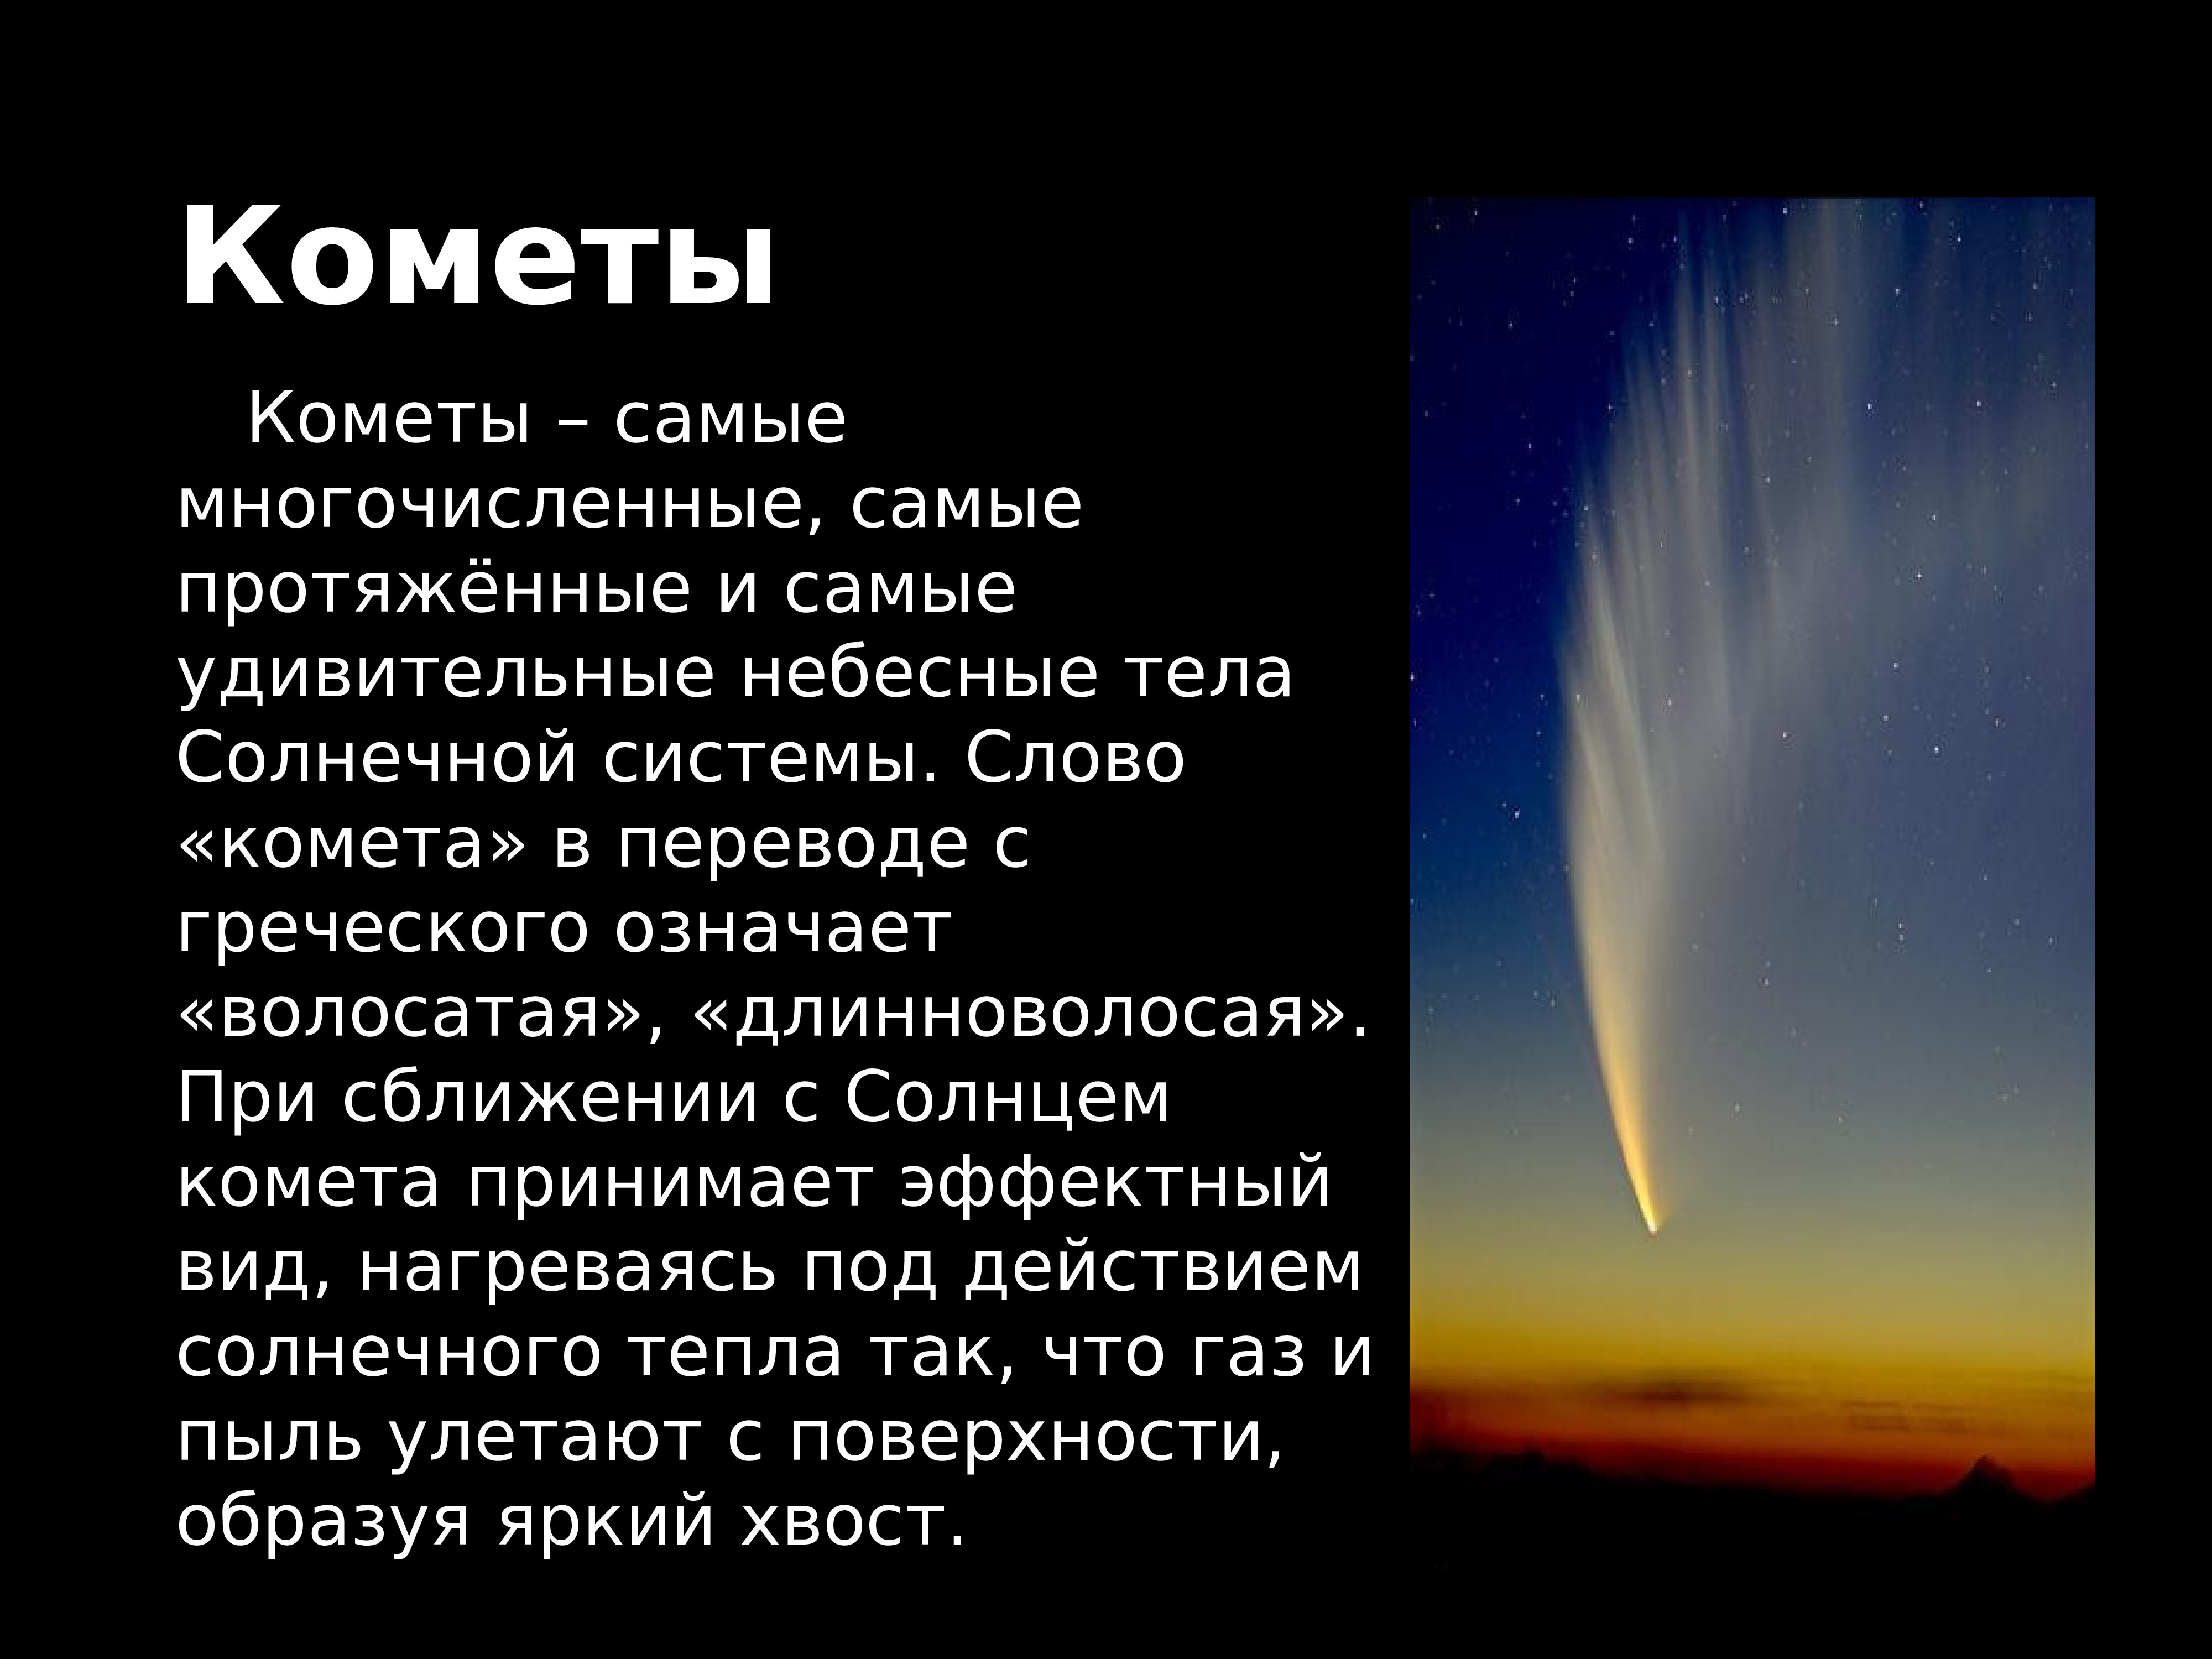 Небесные тела солнечной системы кометы